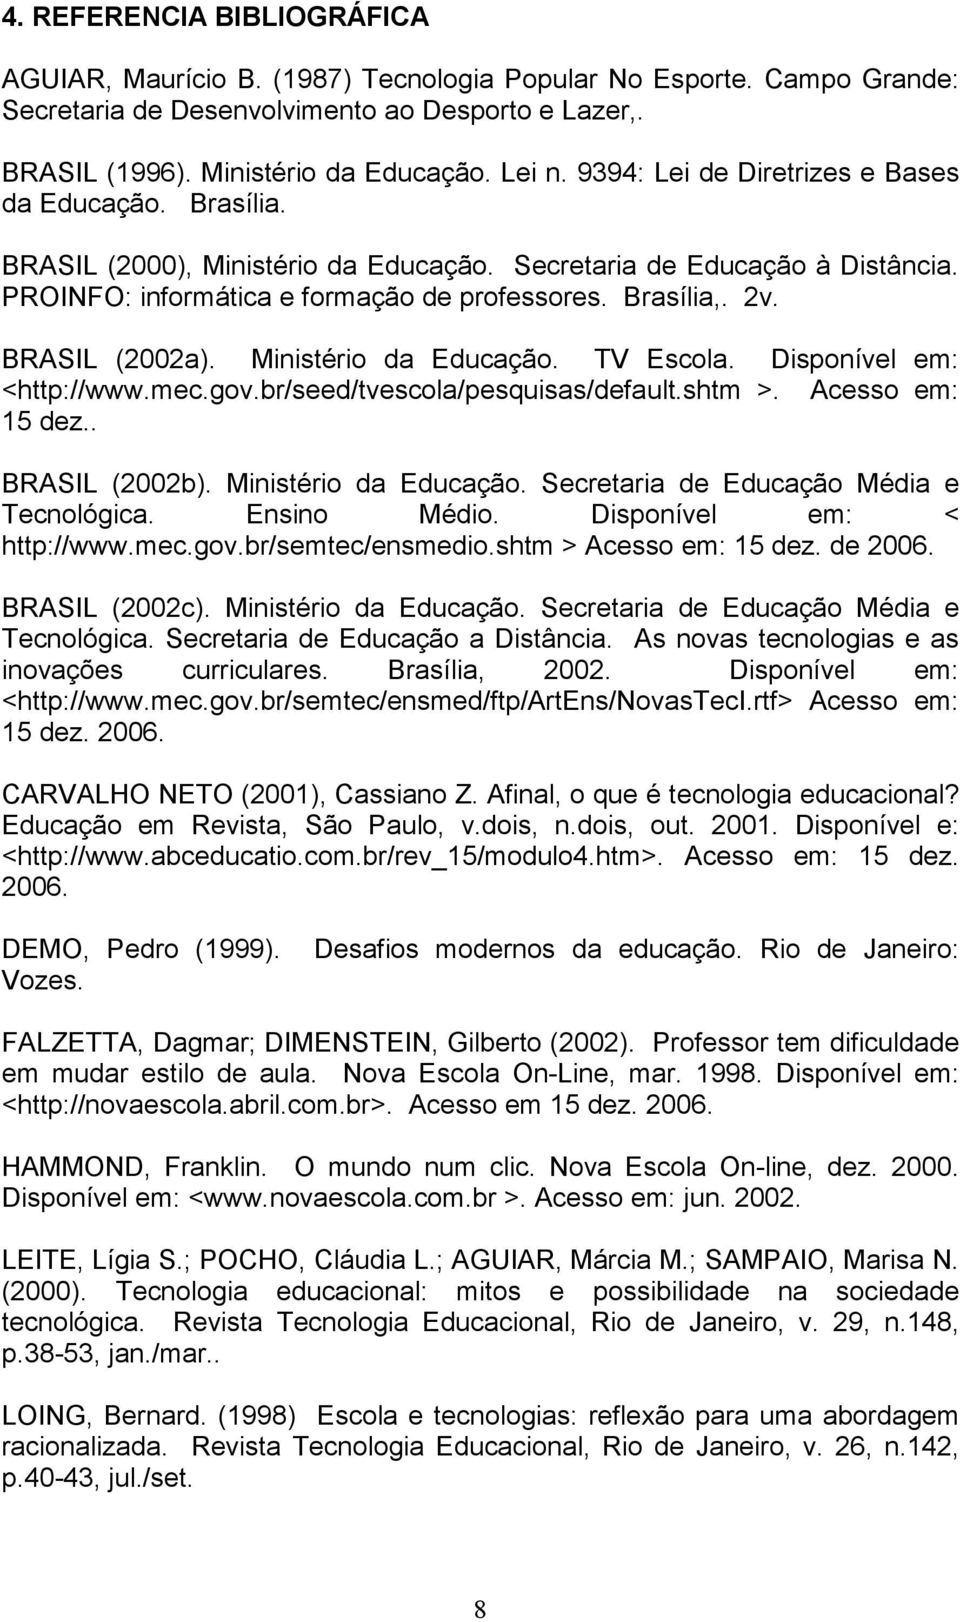 BRASIL (2002a). Ministério da Educação. TV Escola. Disponível em: <http://www.mec.gov.br/seed/tvescola/pesquisas/default.shtm >. Acesso em: 15 dez.. BRASIL (2002b). Ministério da Educação. Secretaria de Educação Média e Tecnológica.